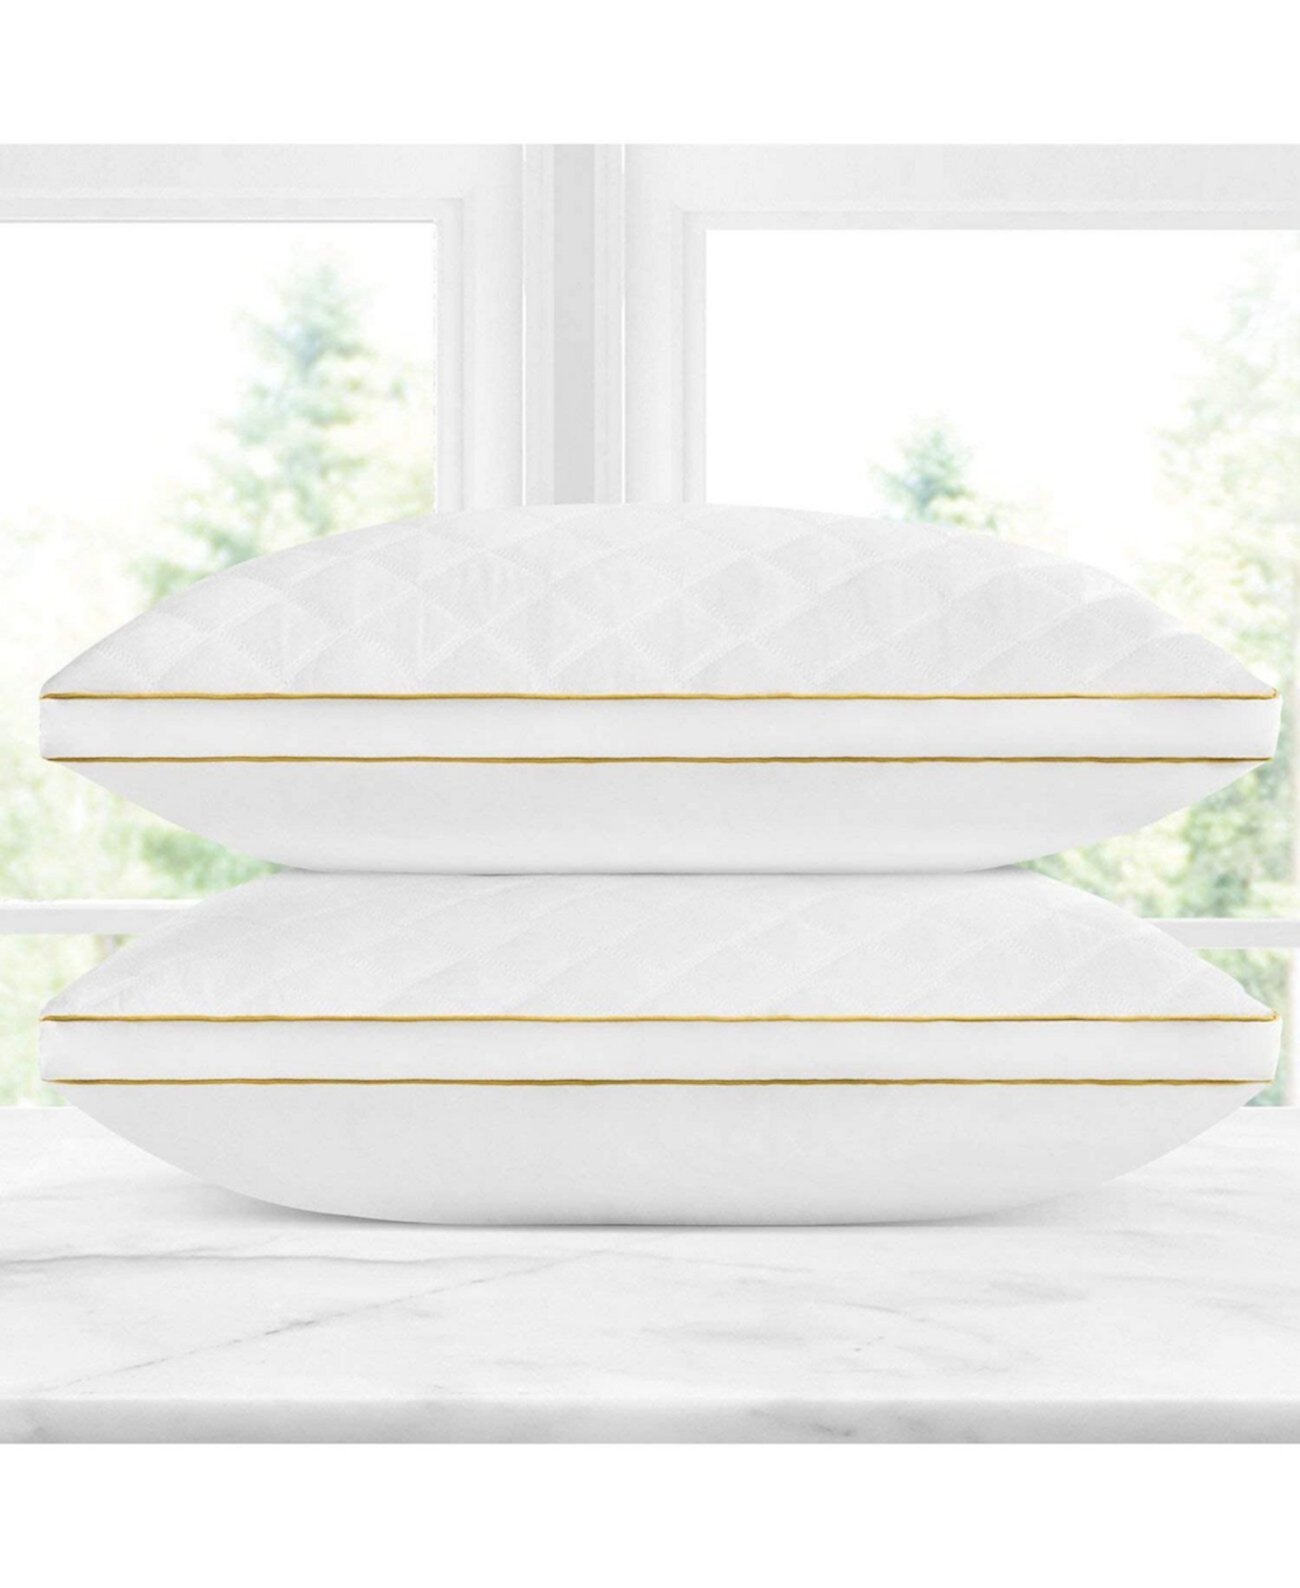 Итальянская роскошная стеганая подушка - королева, набор из 2 шт. Dr Pillow